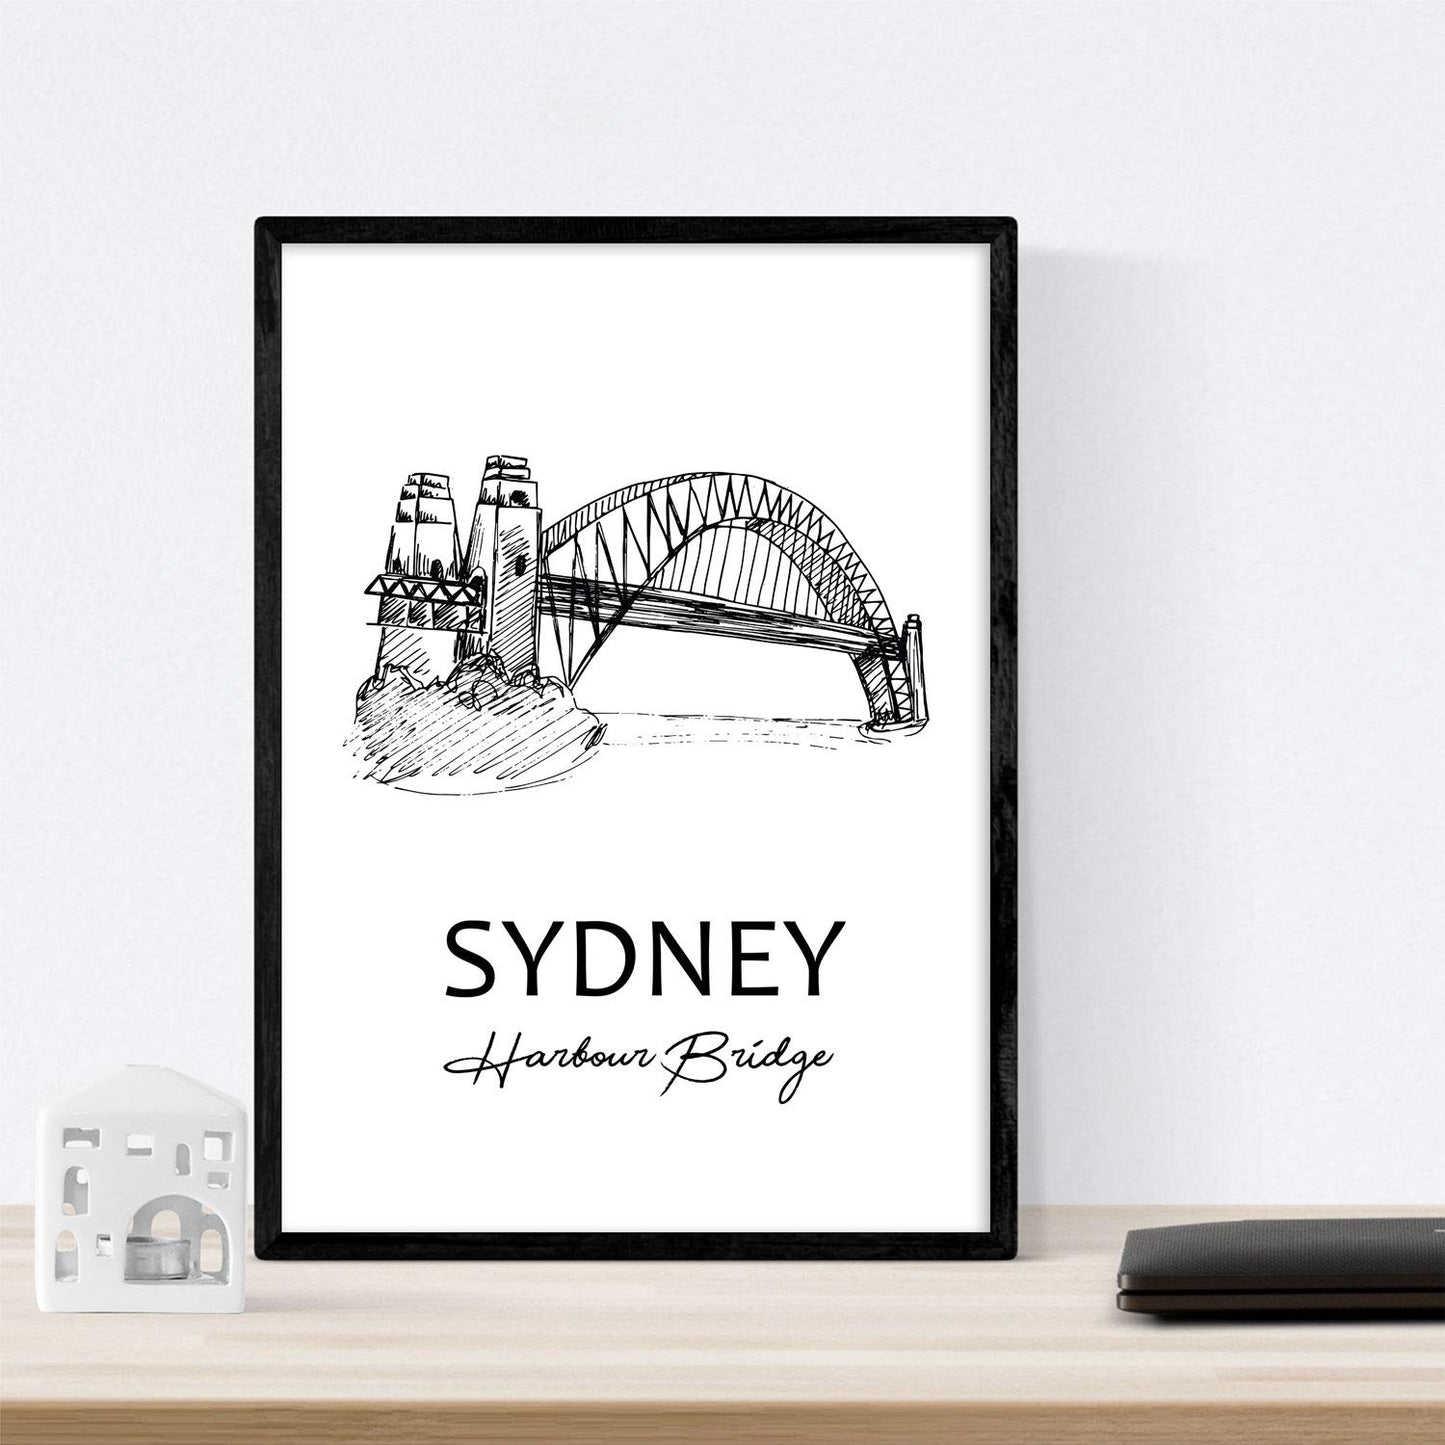 Pack de posters de paises y monumentos. Mapa cuidad Sidney, monumento Harbour Bridge y mapa Australia.-Artwork-Nacnic-Nacnic Estudio SL